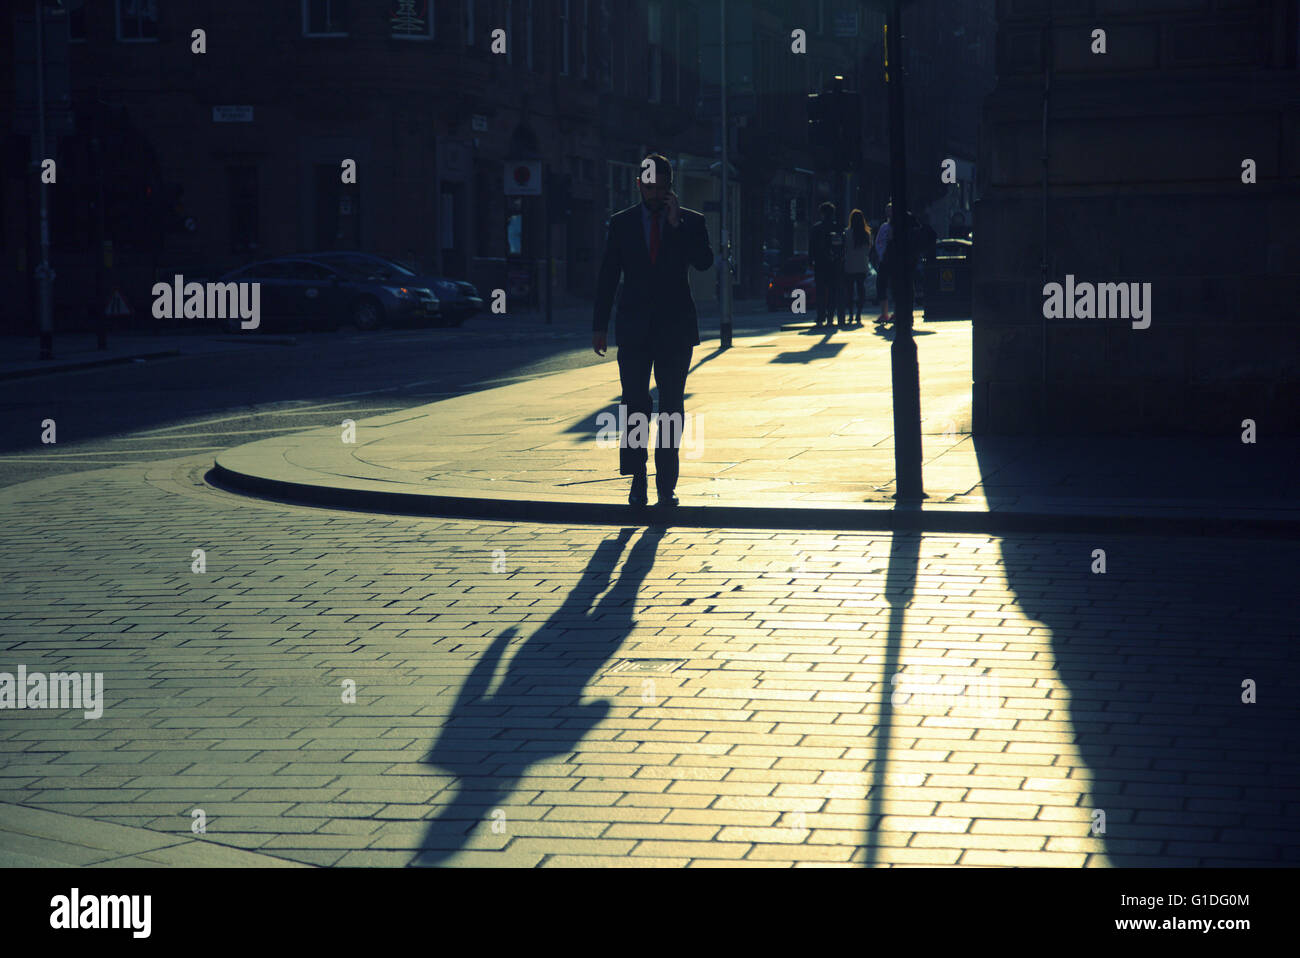 Silhouette eines Mannes mit Schatten auf Glasgow Straße mit Straße Cont-Jour Hintergrundbeleuchtung in Glasgow, Schottland, Großbritannien. Stockfoto